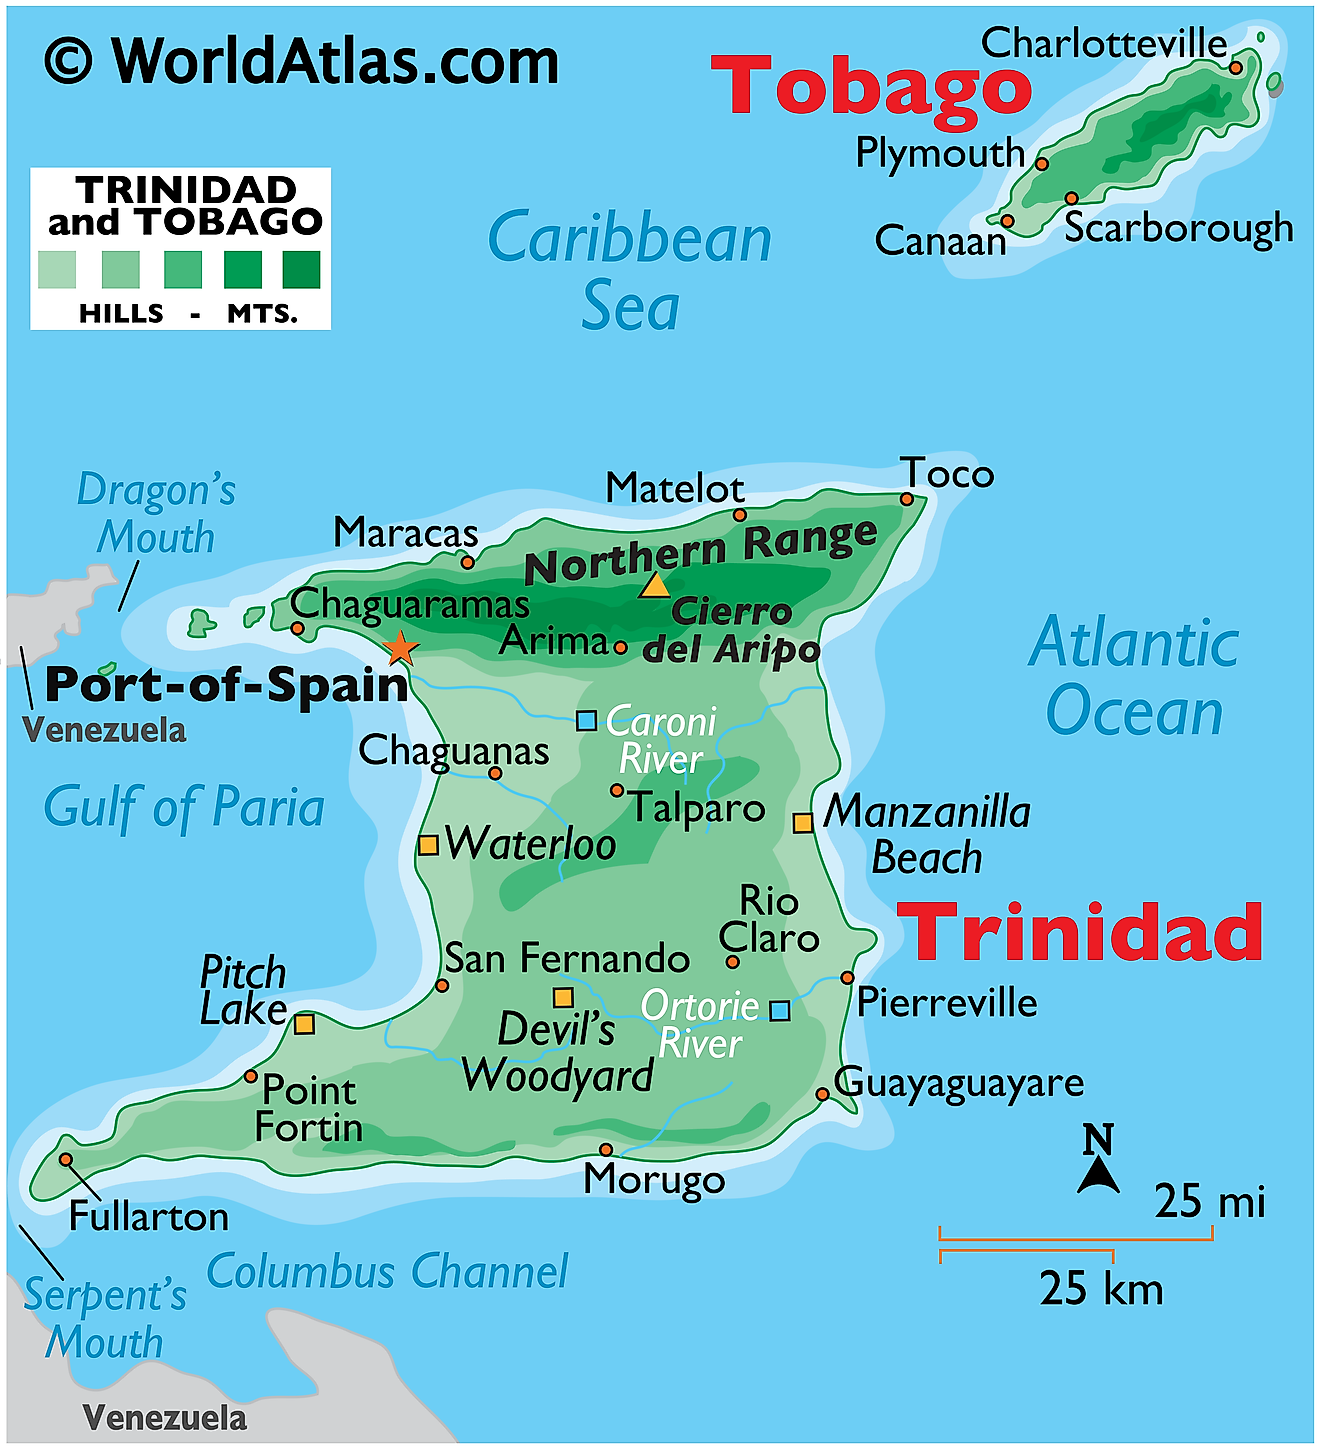 Mapa Físico de Trinidad y Tobago mostrando relieve, dos islas principales, montañas, el famoso Lago Pitch, ríos, etc.